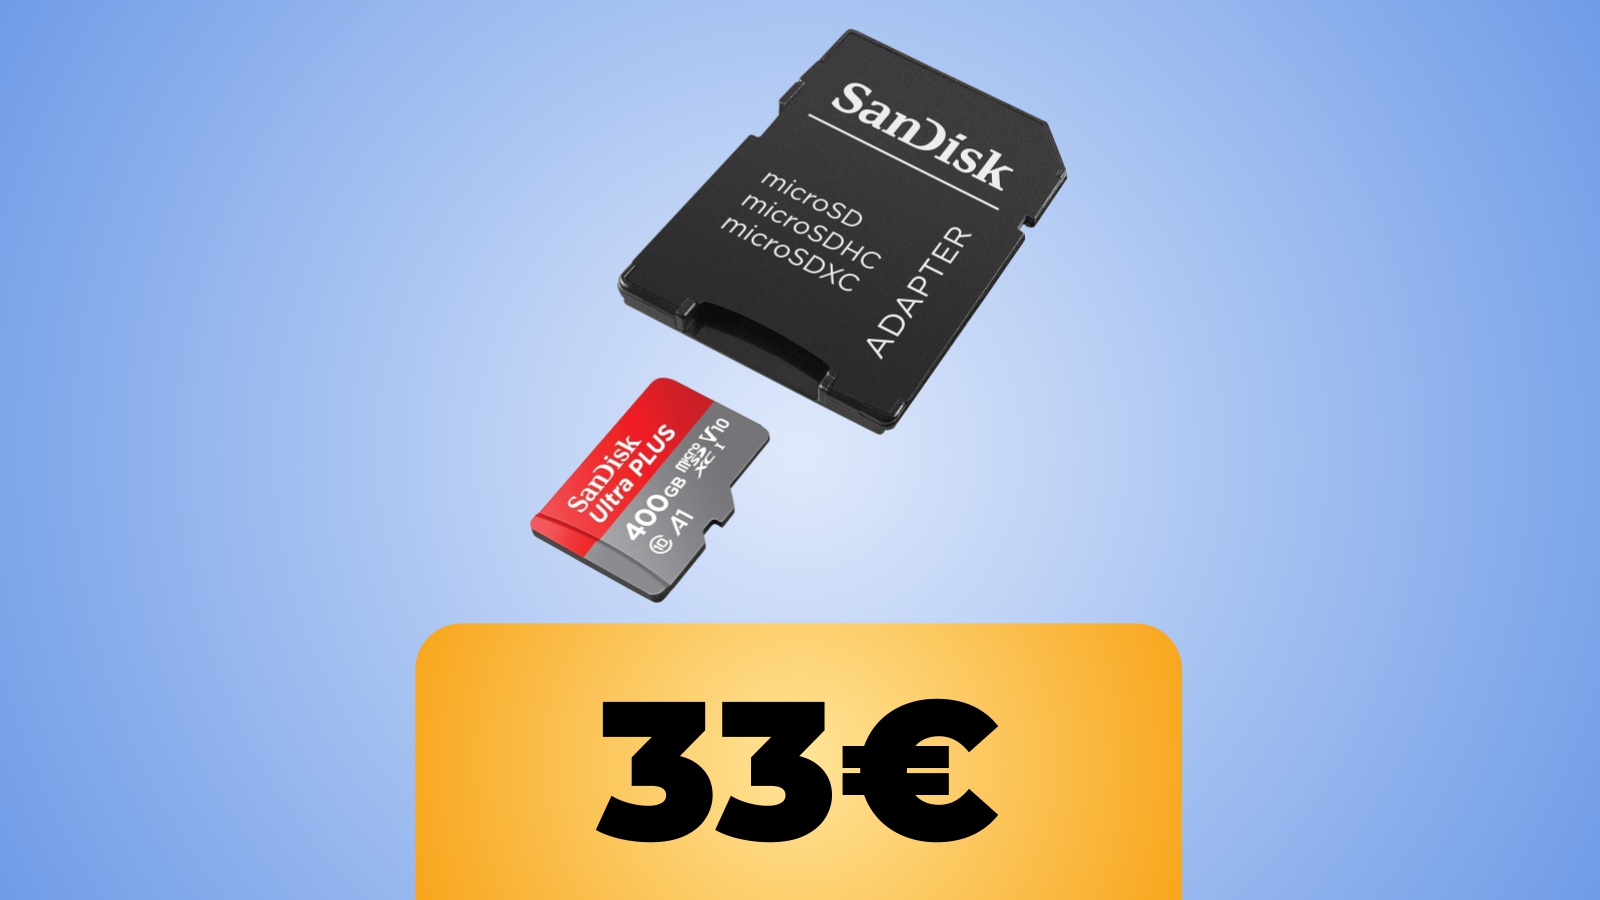 Scheda di Memoria MicroSDXC da 400 GB con adattatore in sconto al prezzo minimo su Amazon